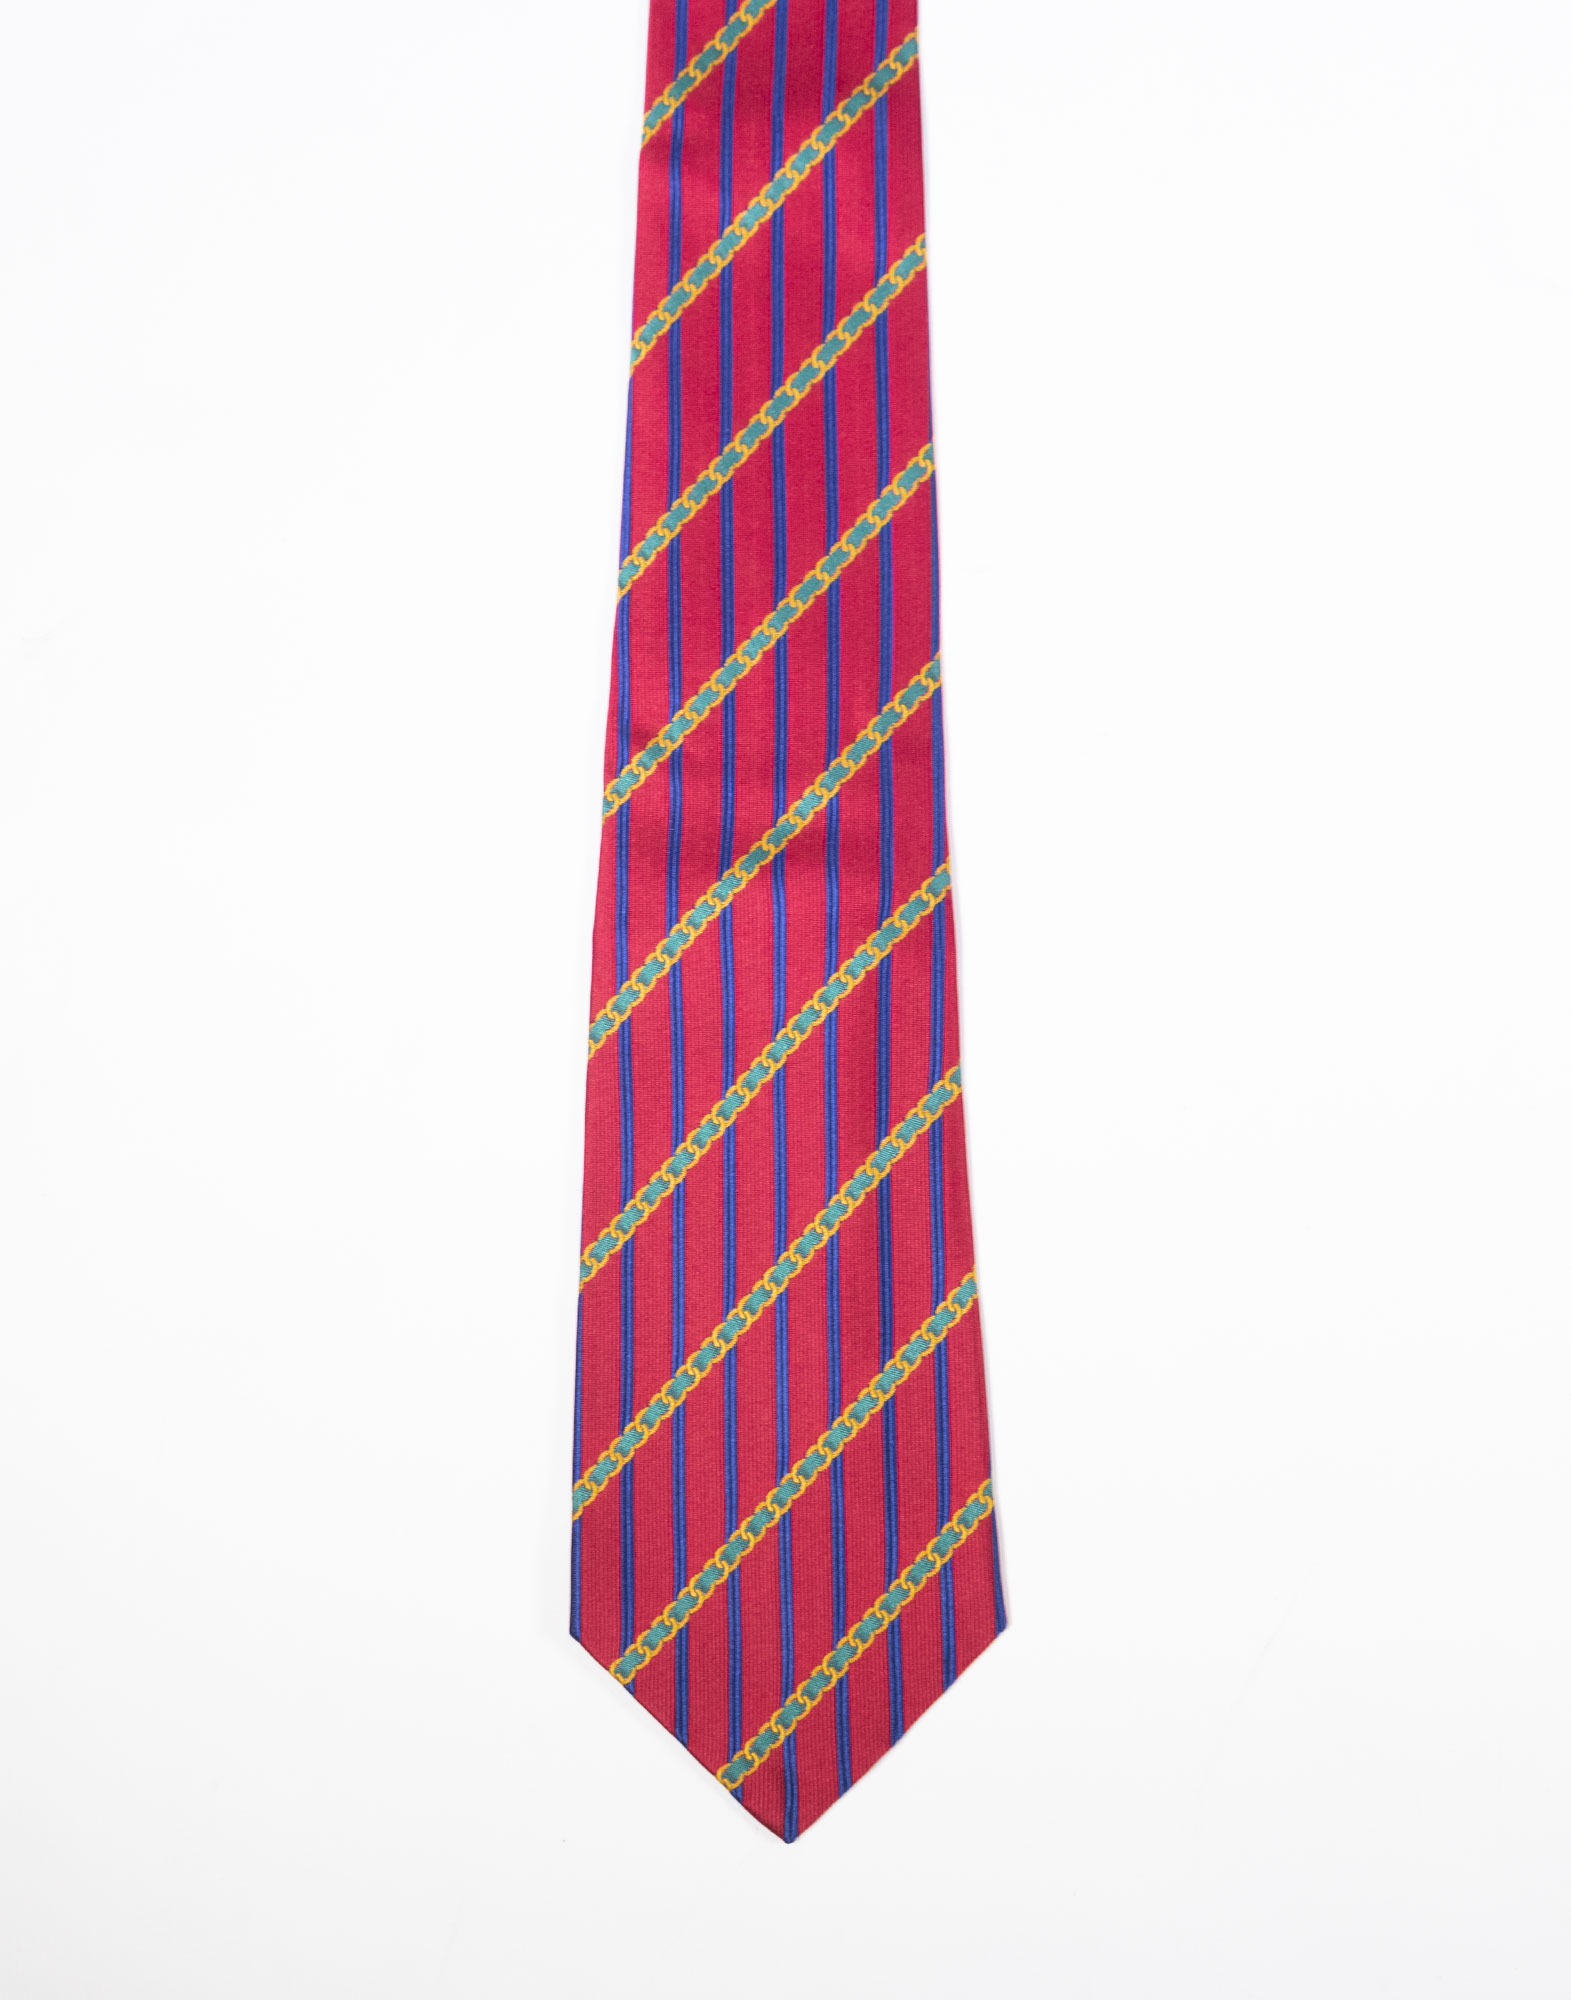 Chanel - Cravatta in seta anni '80/90